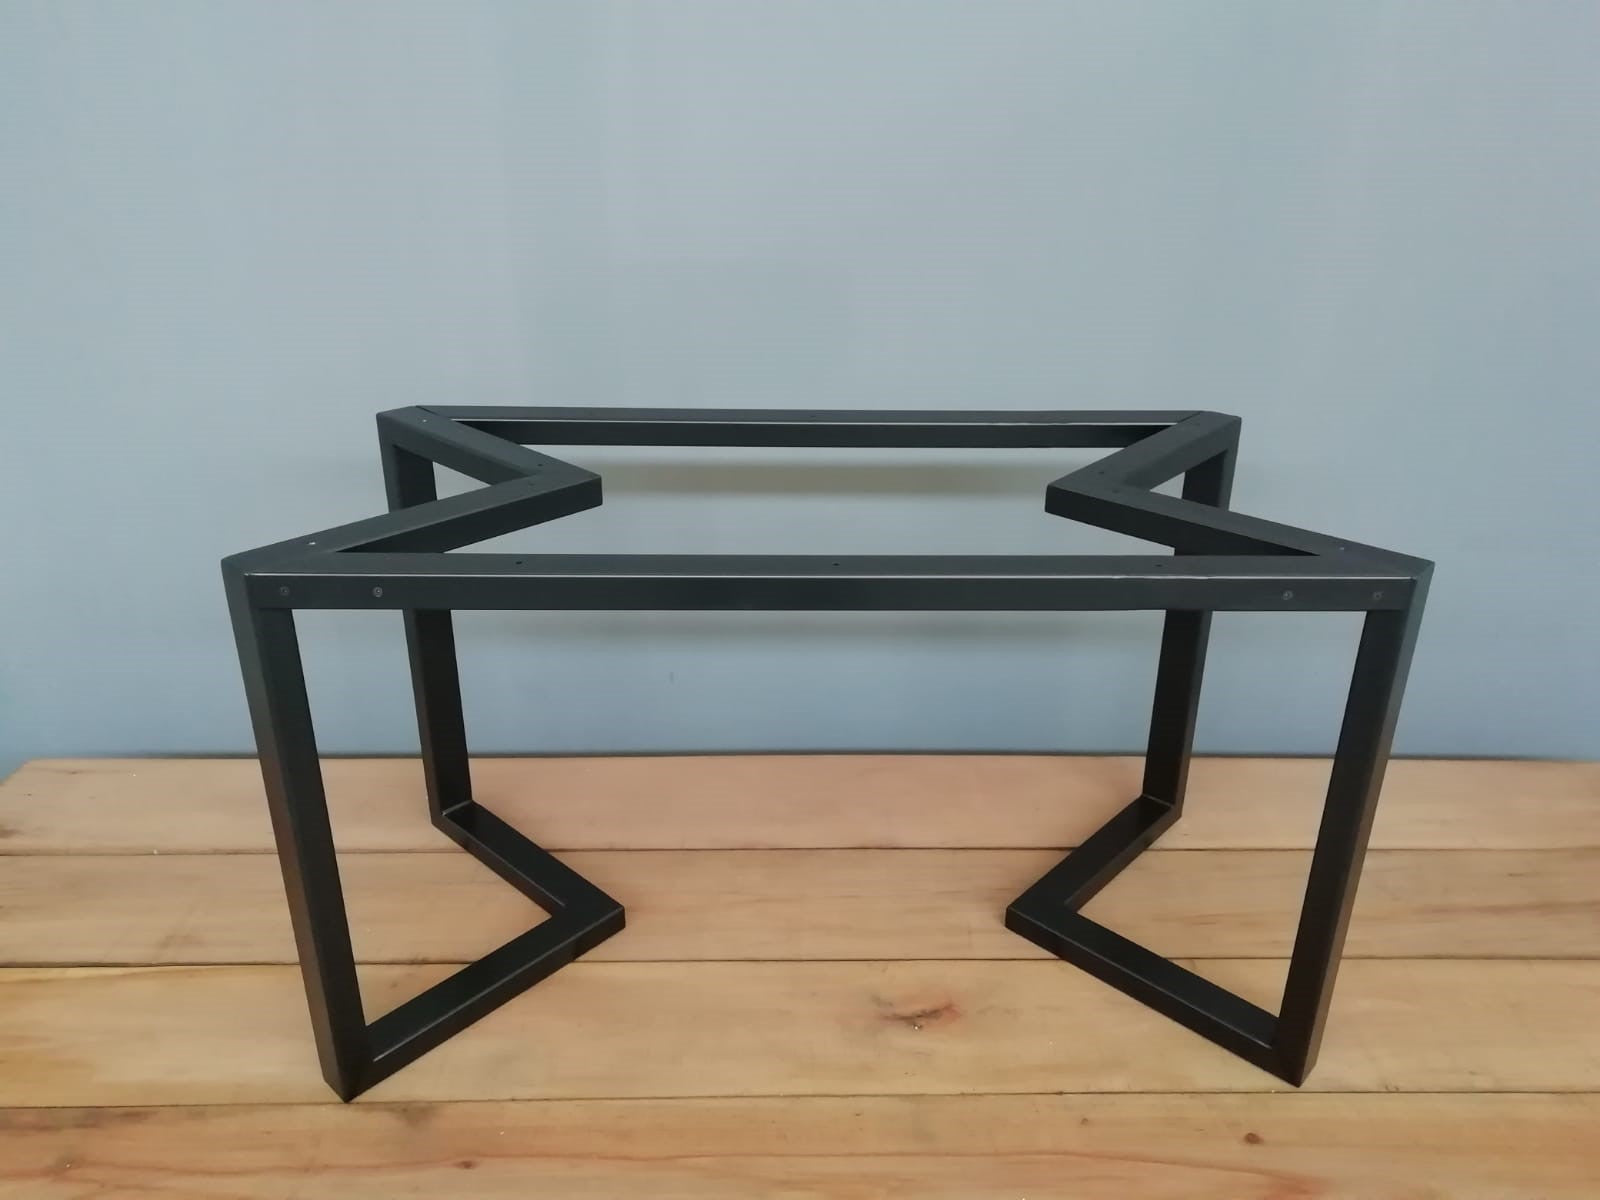 metal table legs shop online